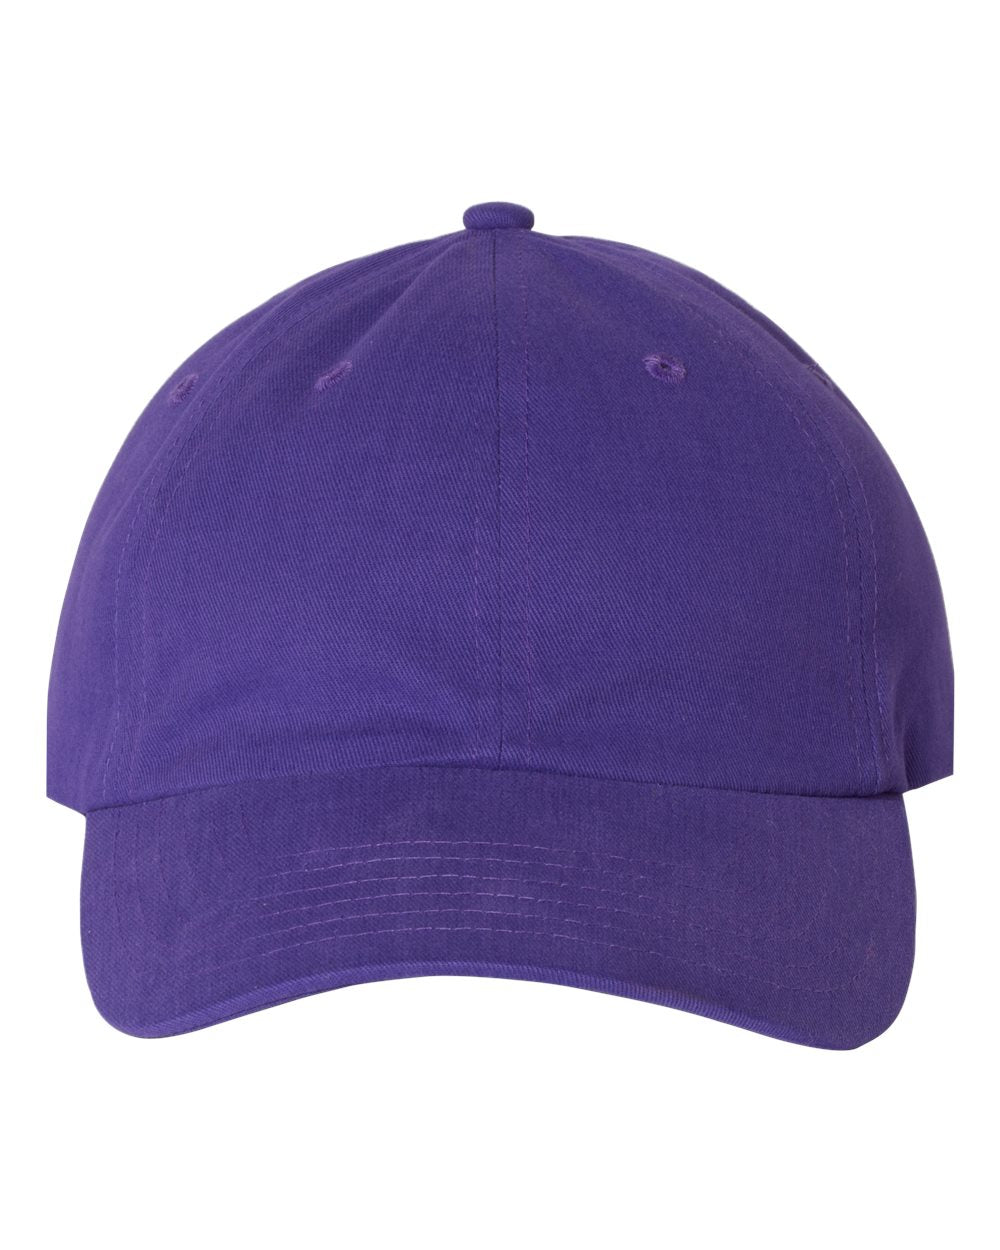 valucap brushed twill cap purple